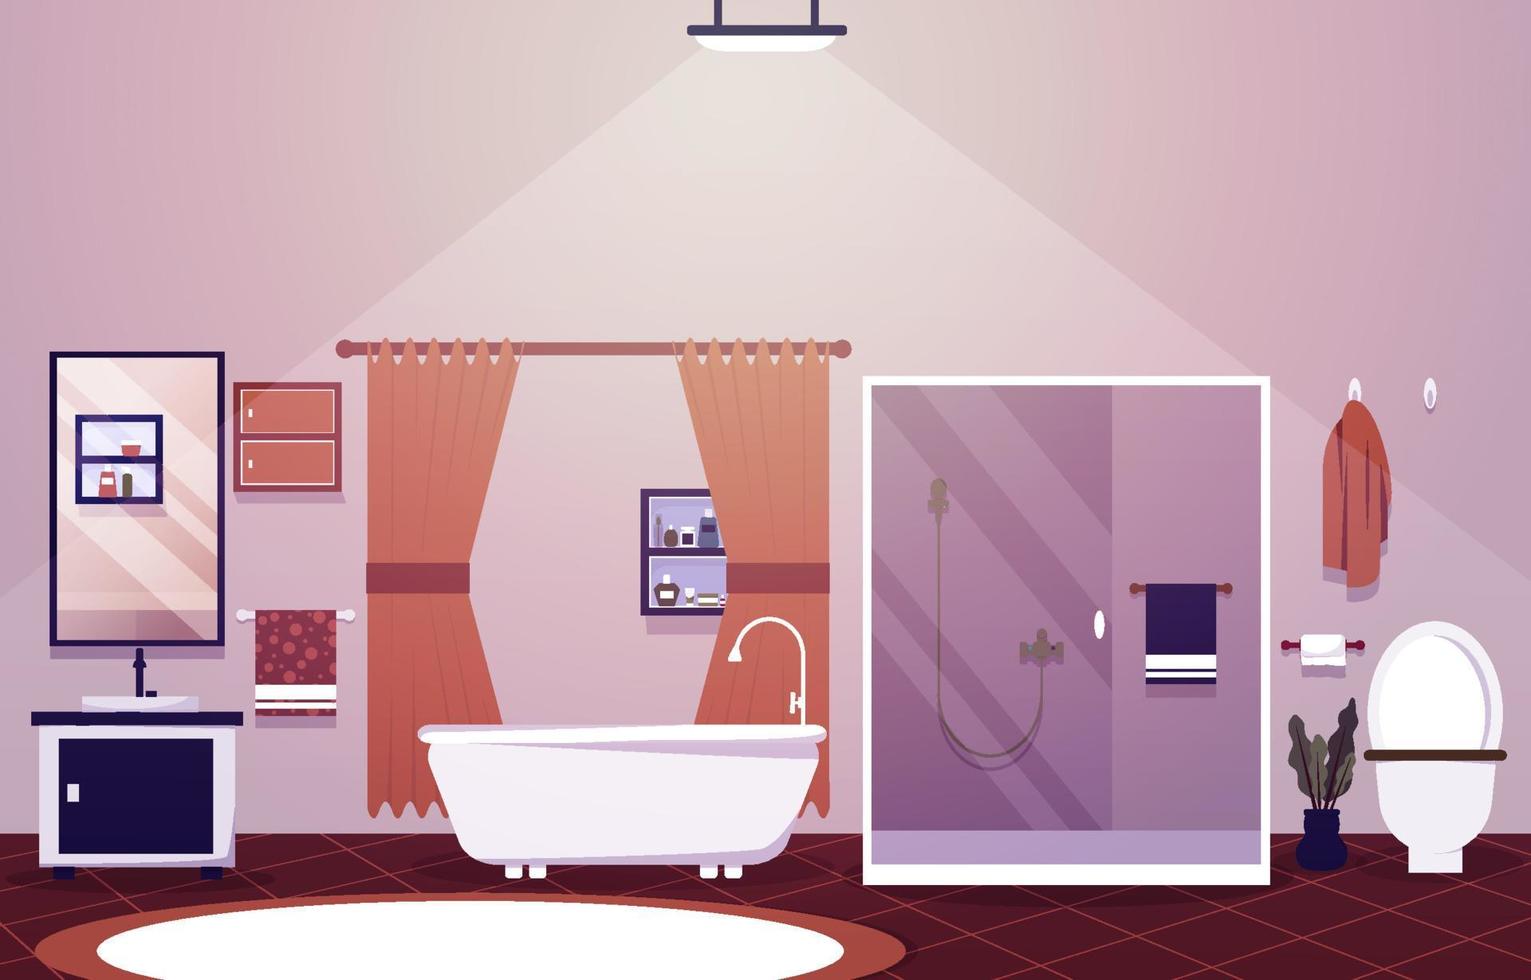 baño limpio diseño de interiores ducha bañera muebles ilustración plana vector